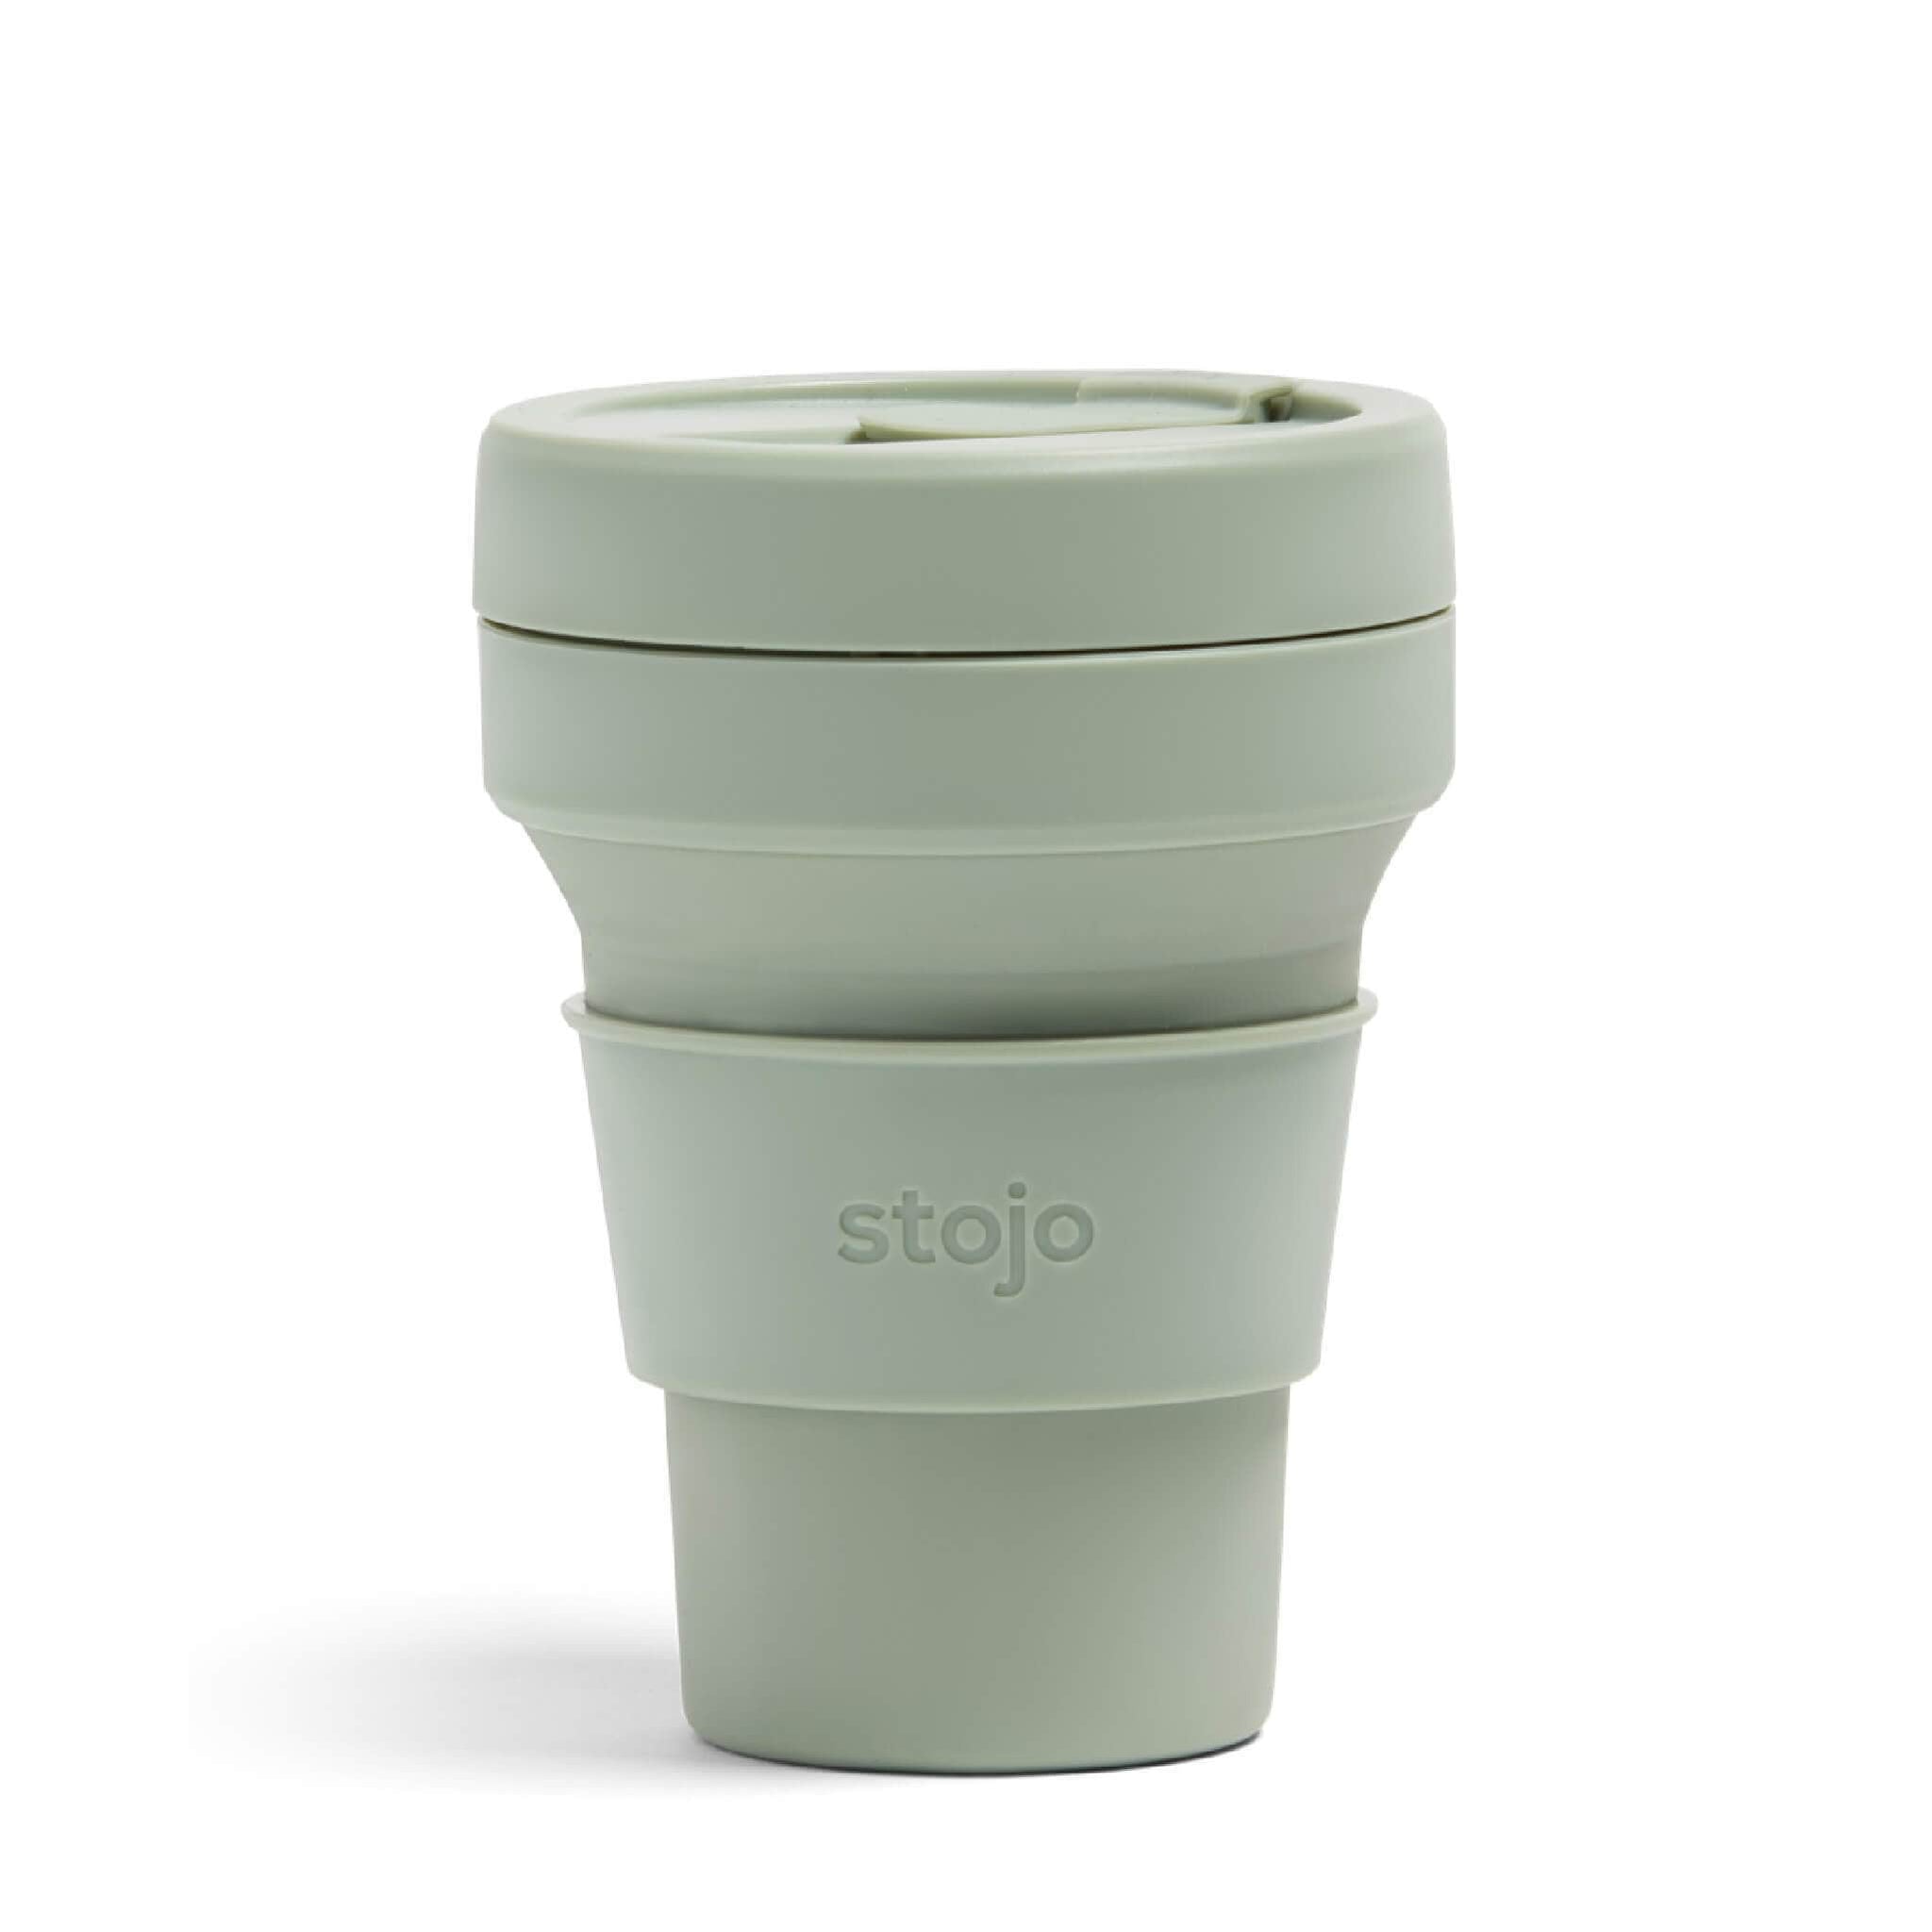 Vaso de silicona plegable Stojo de 12 onzas / 335ml de color sage verde